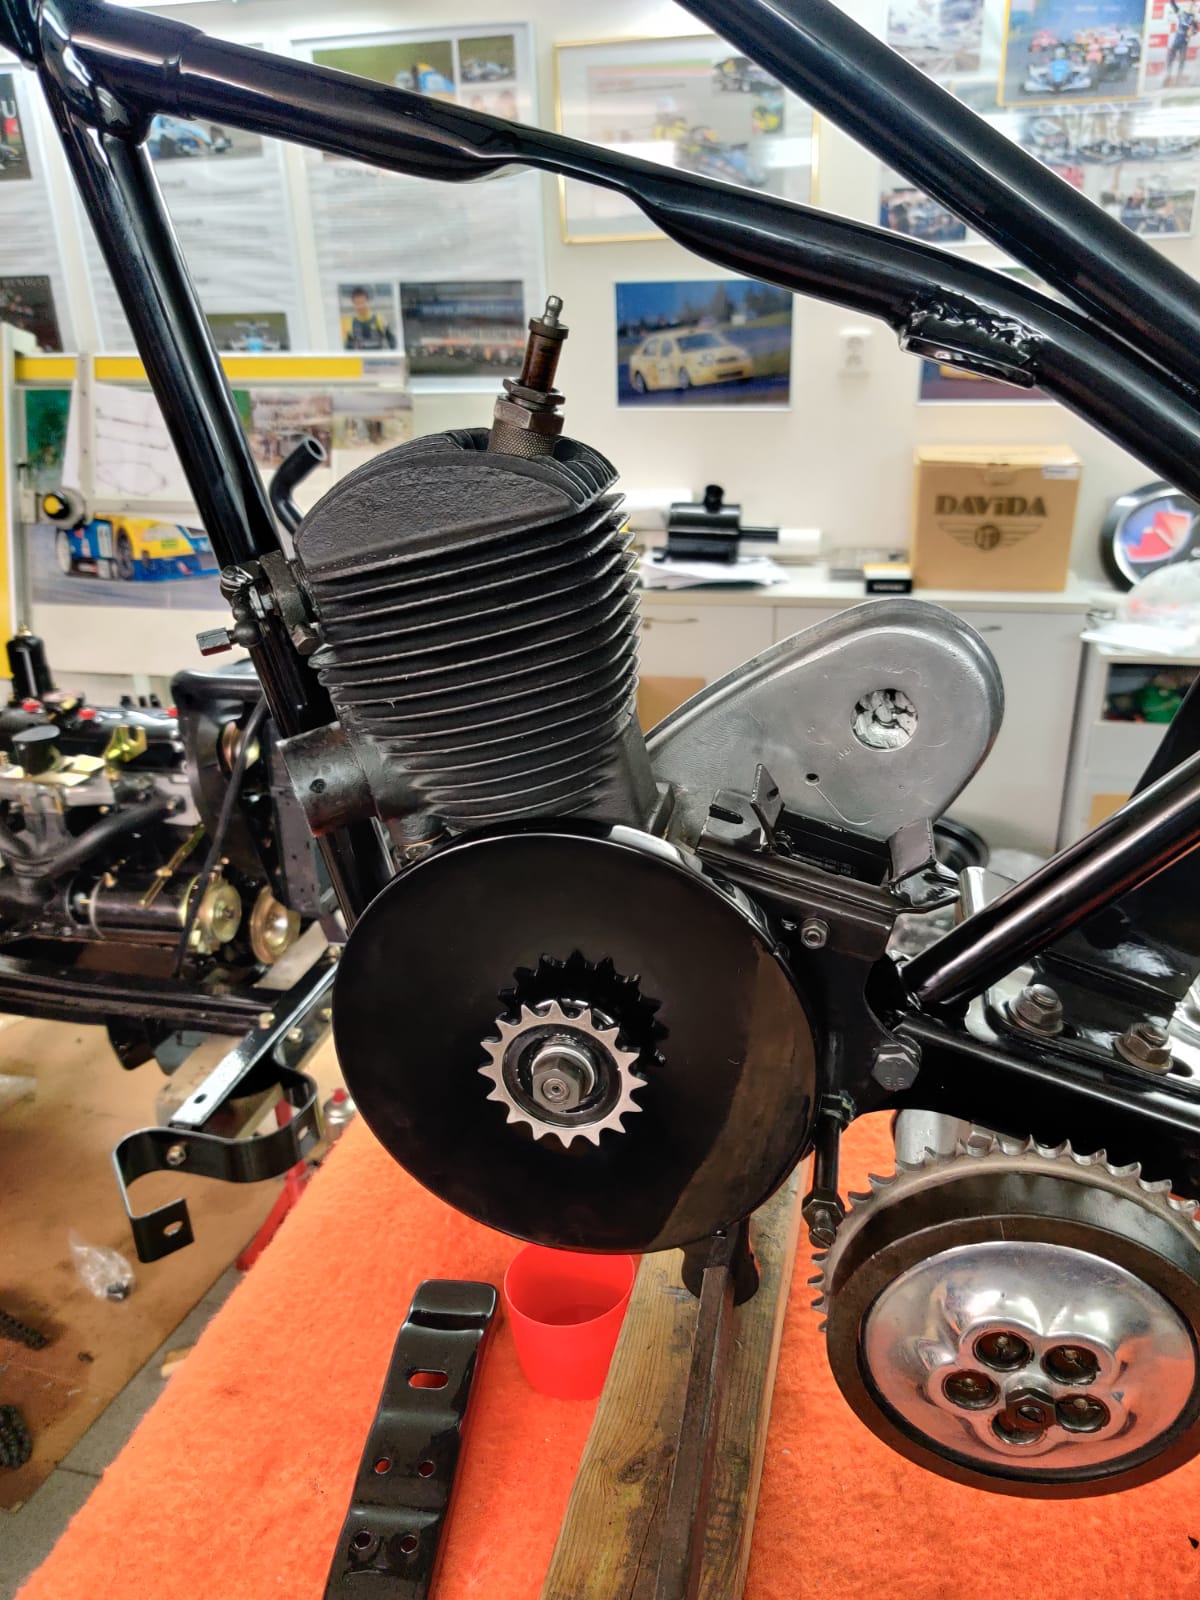 restauration restaurierung motorrad Terrot 175 motor im rahmen